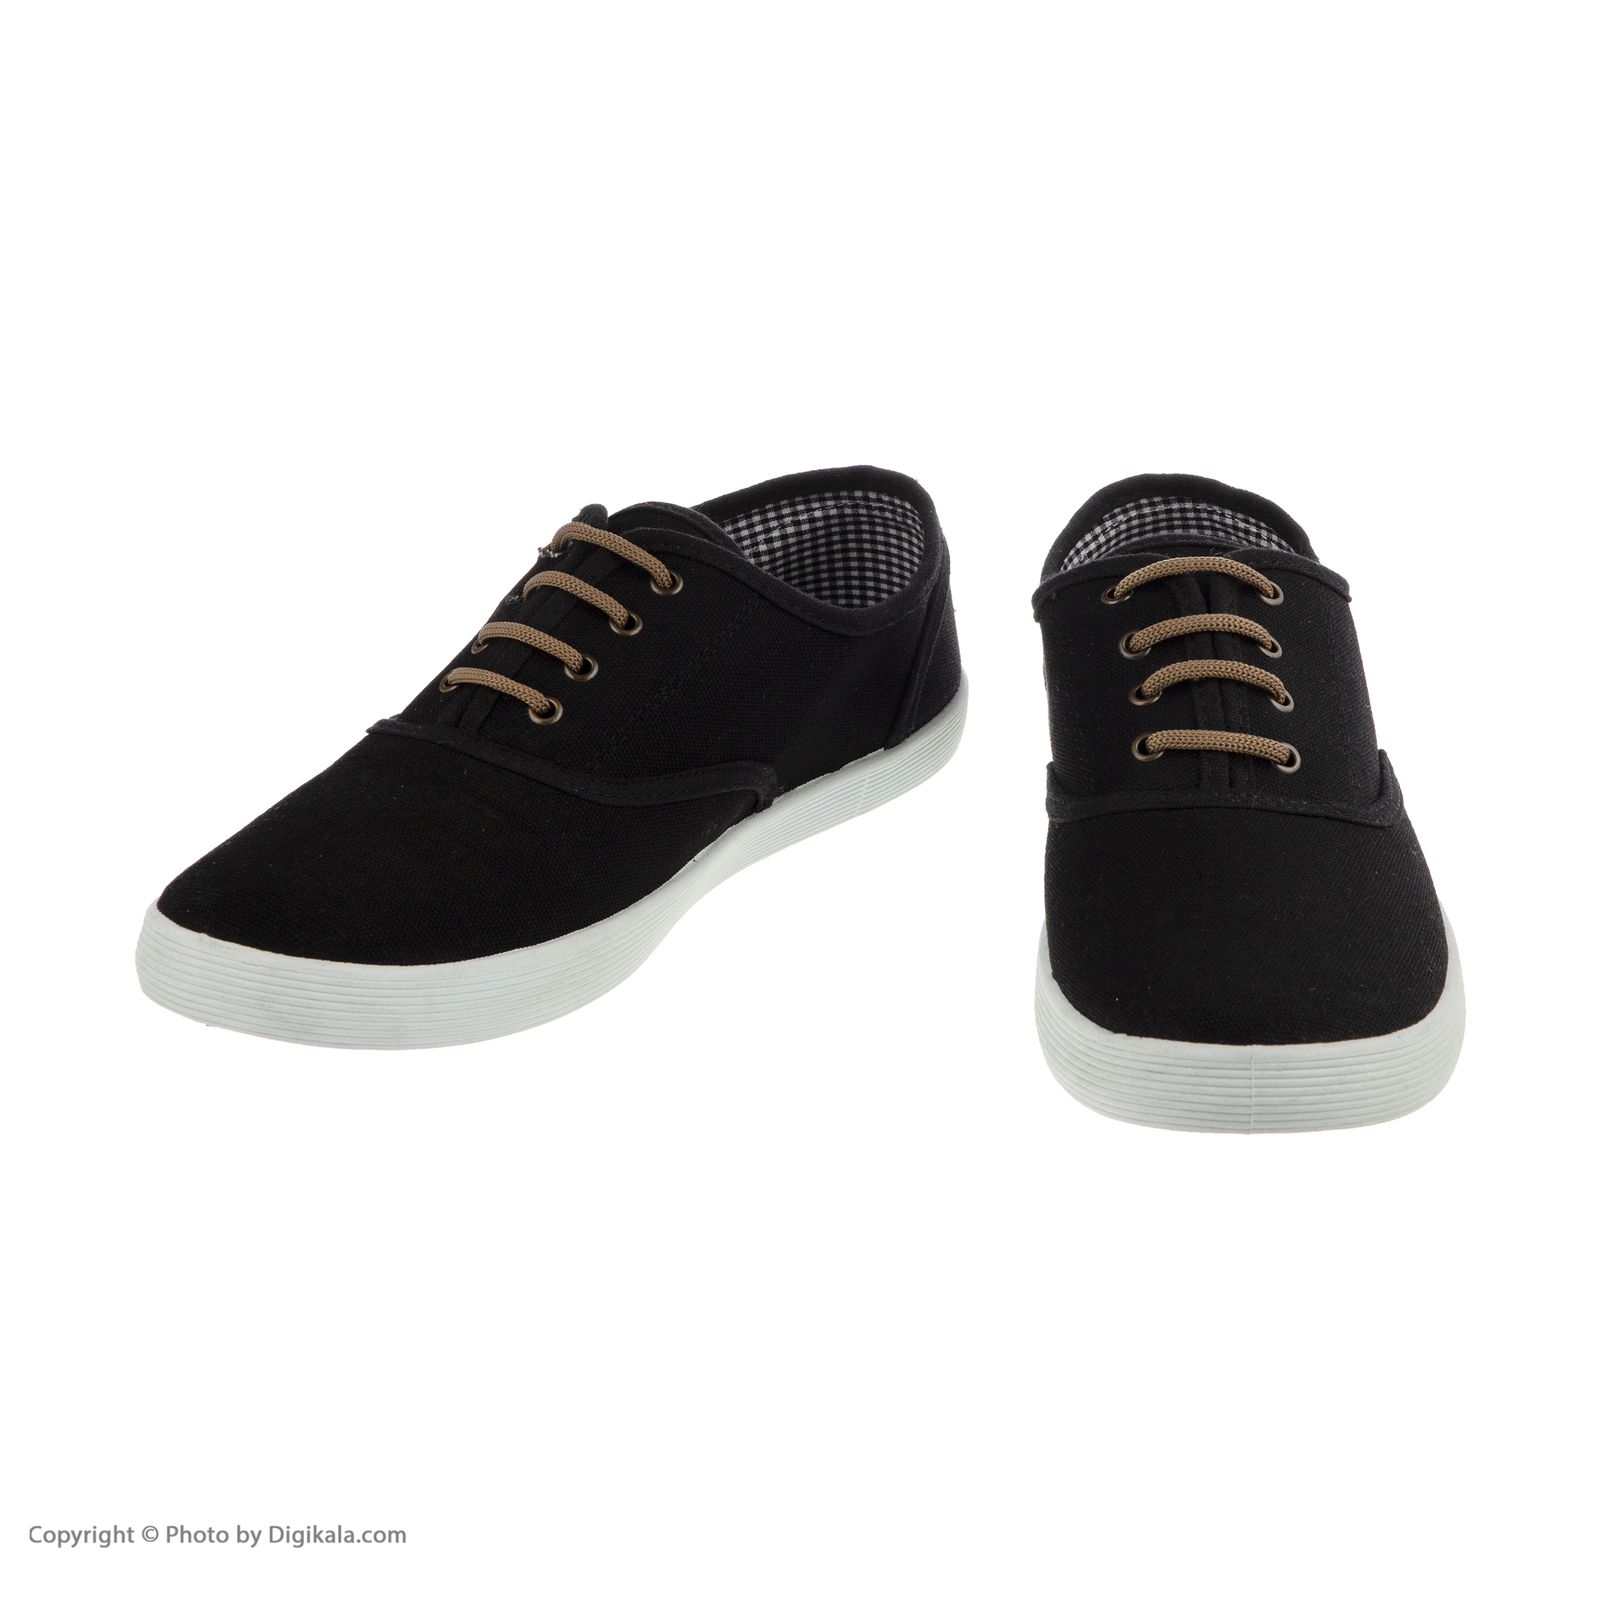 کفش راحتی مردانه پولاریس مدل 100299671-101 - مشکی - 5